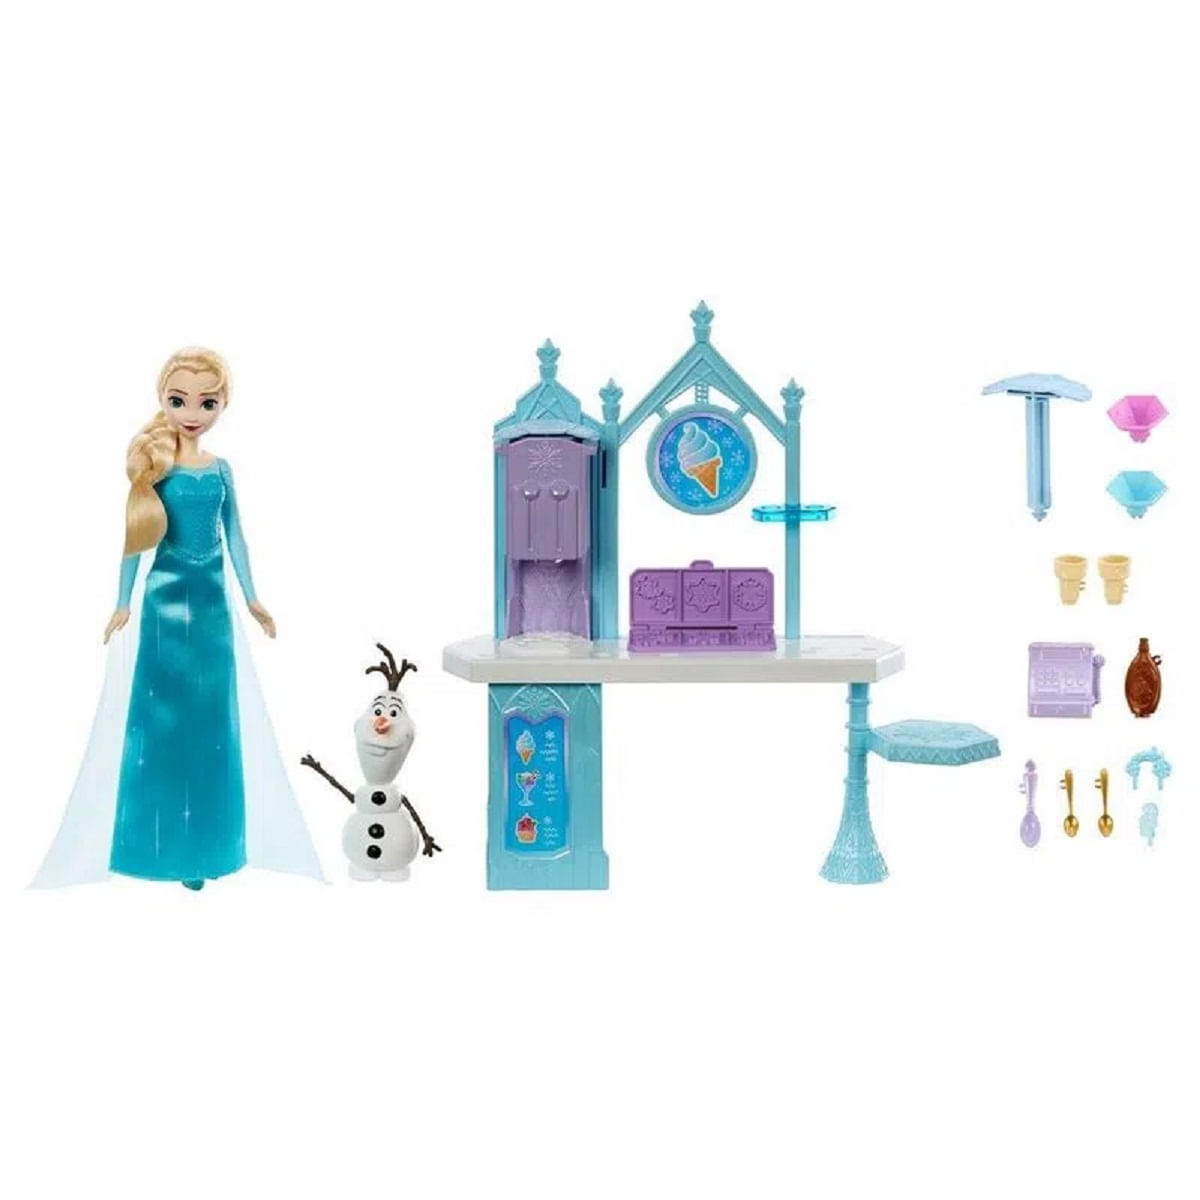 Bonecas Frozen Elsa e Anna Disney Brinquedo para Crianças De Plástico